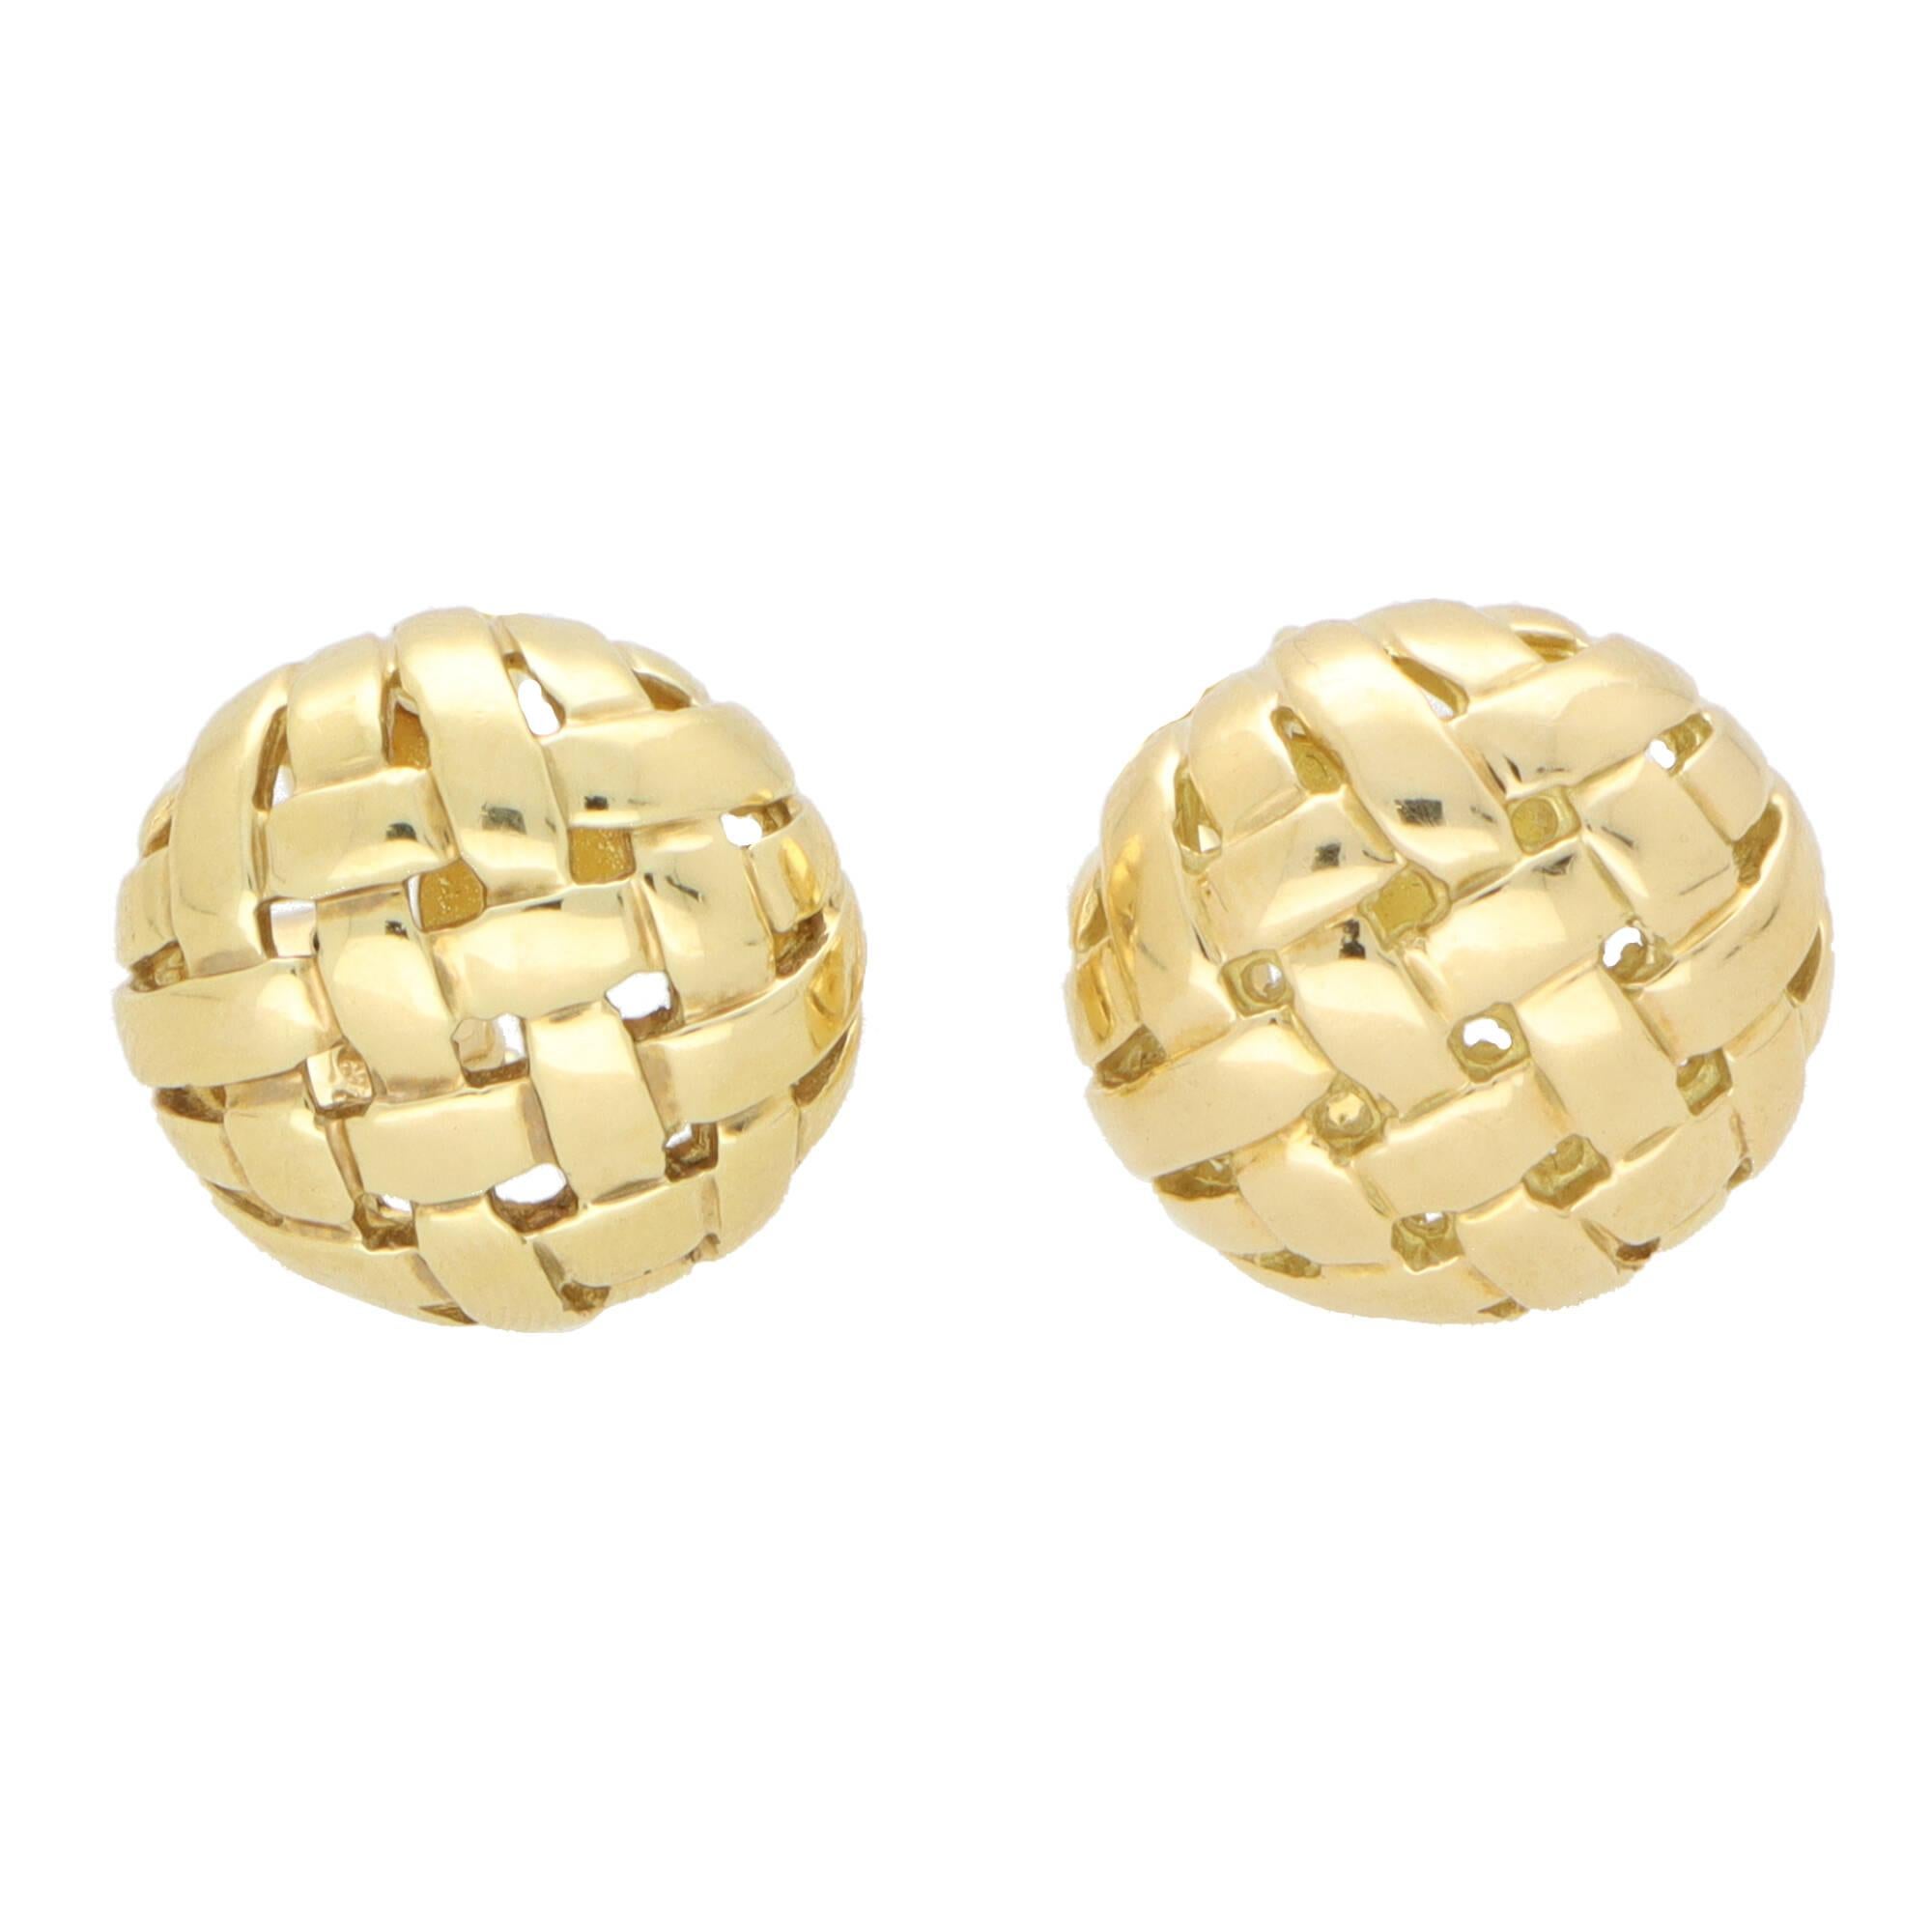 Modern Vintage Tiffany & Co Weaved Basket Earrings in 18k Yellow Gold